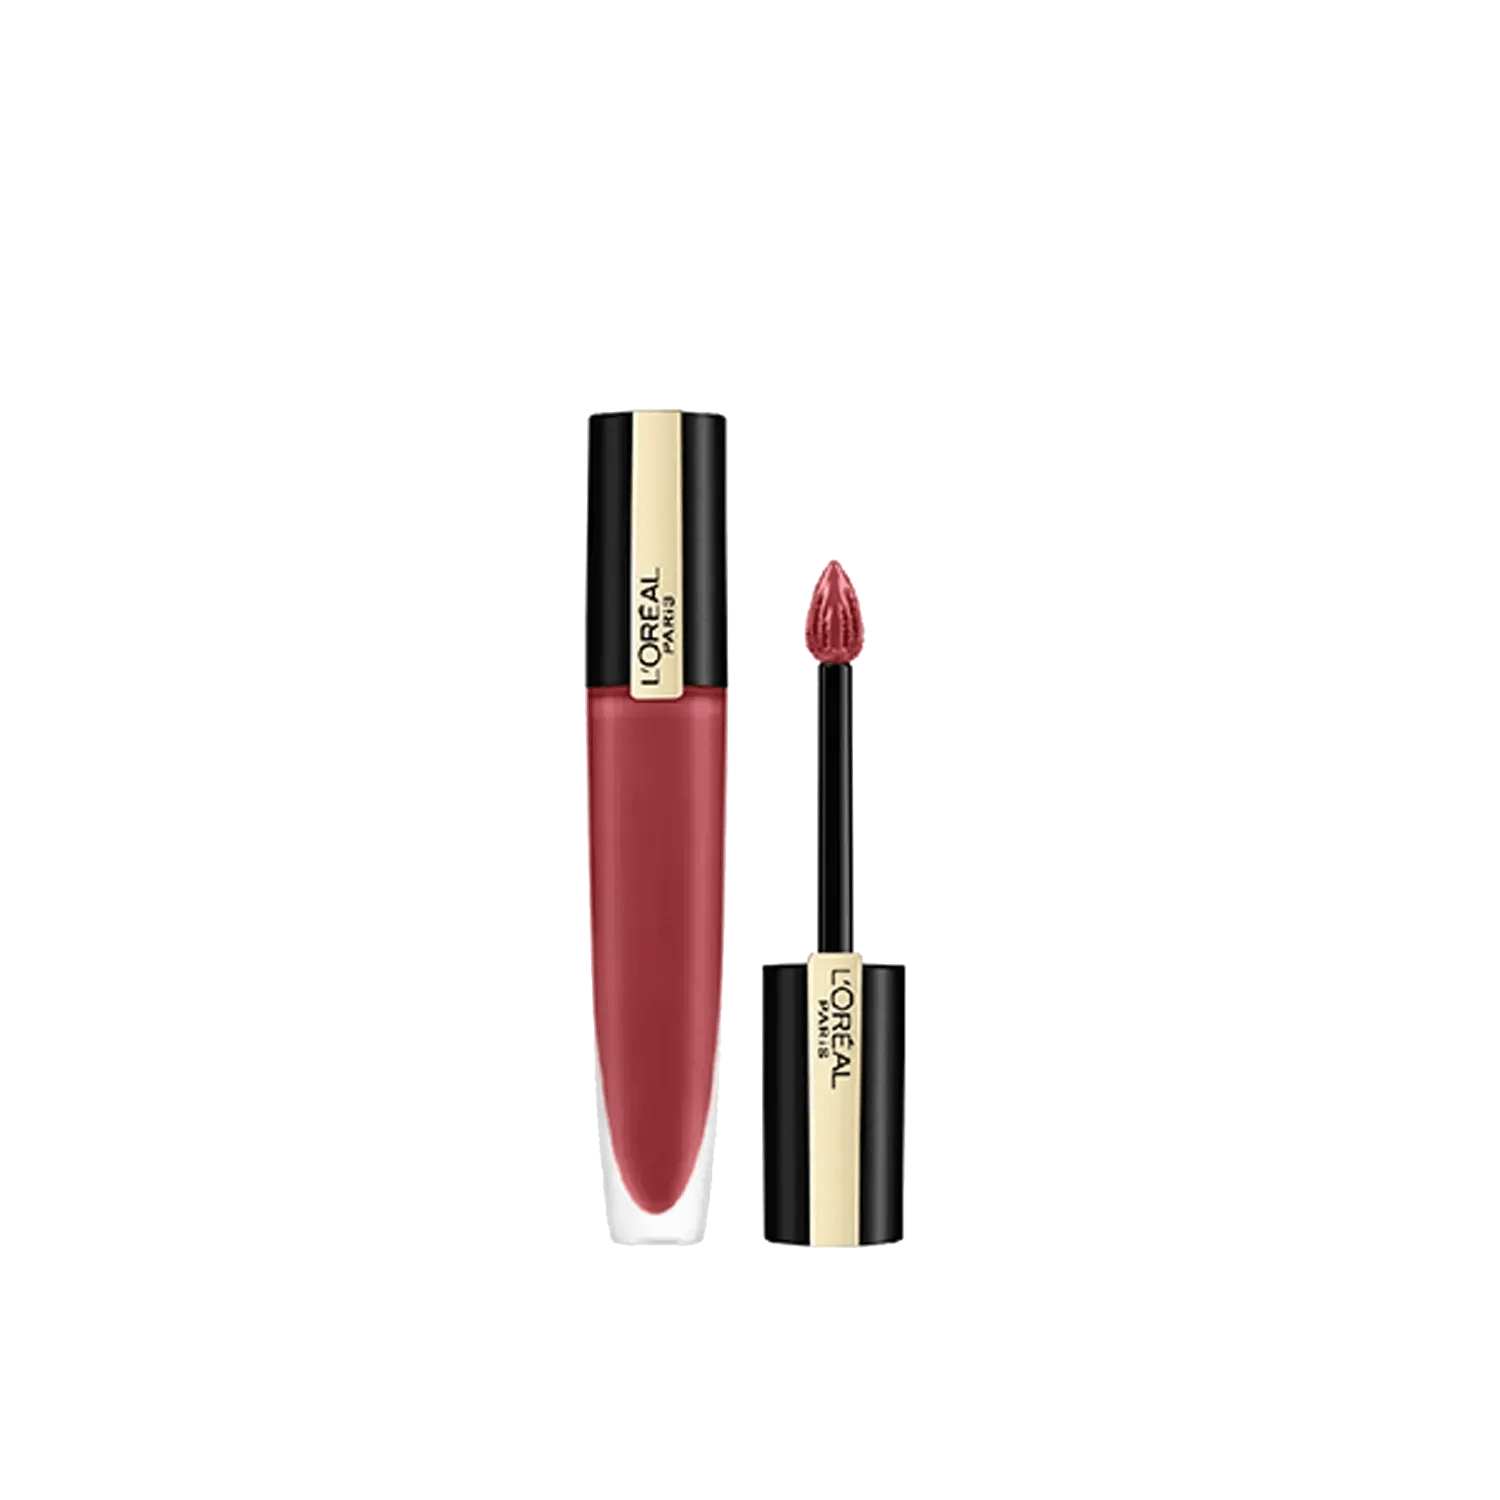 L'Oreal Paris | L'Oreal Paris Rouge Signature Matte Liquid Lipstick 129 I Lead (7g)